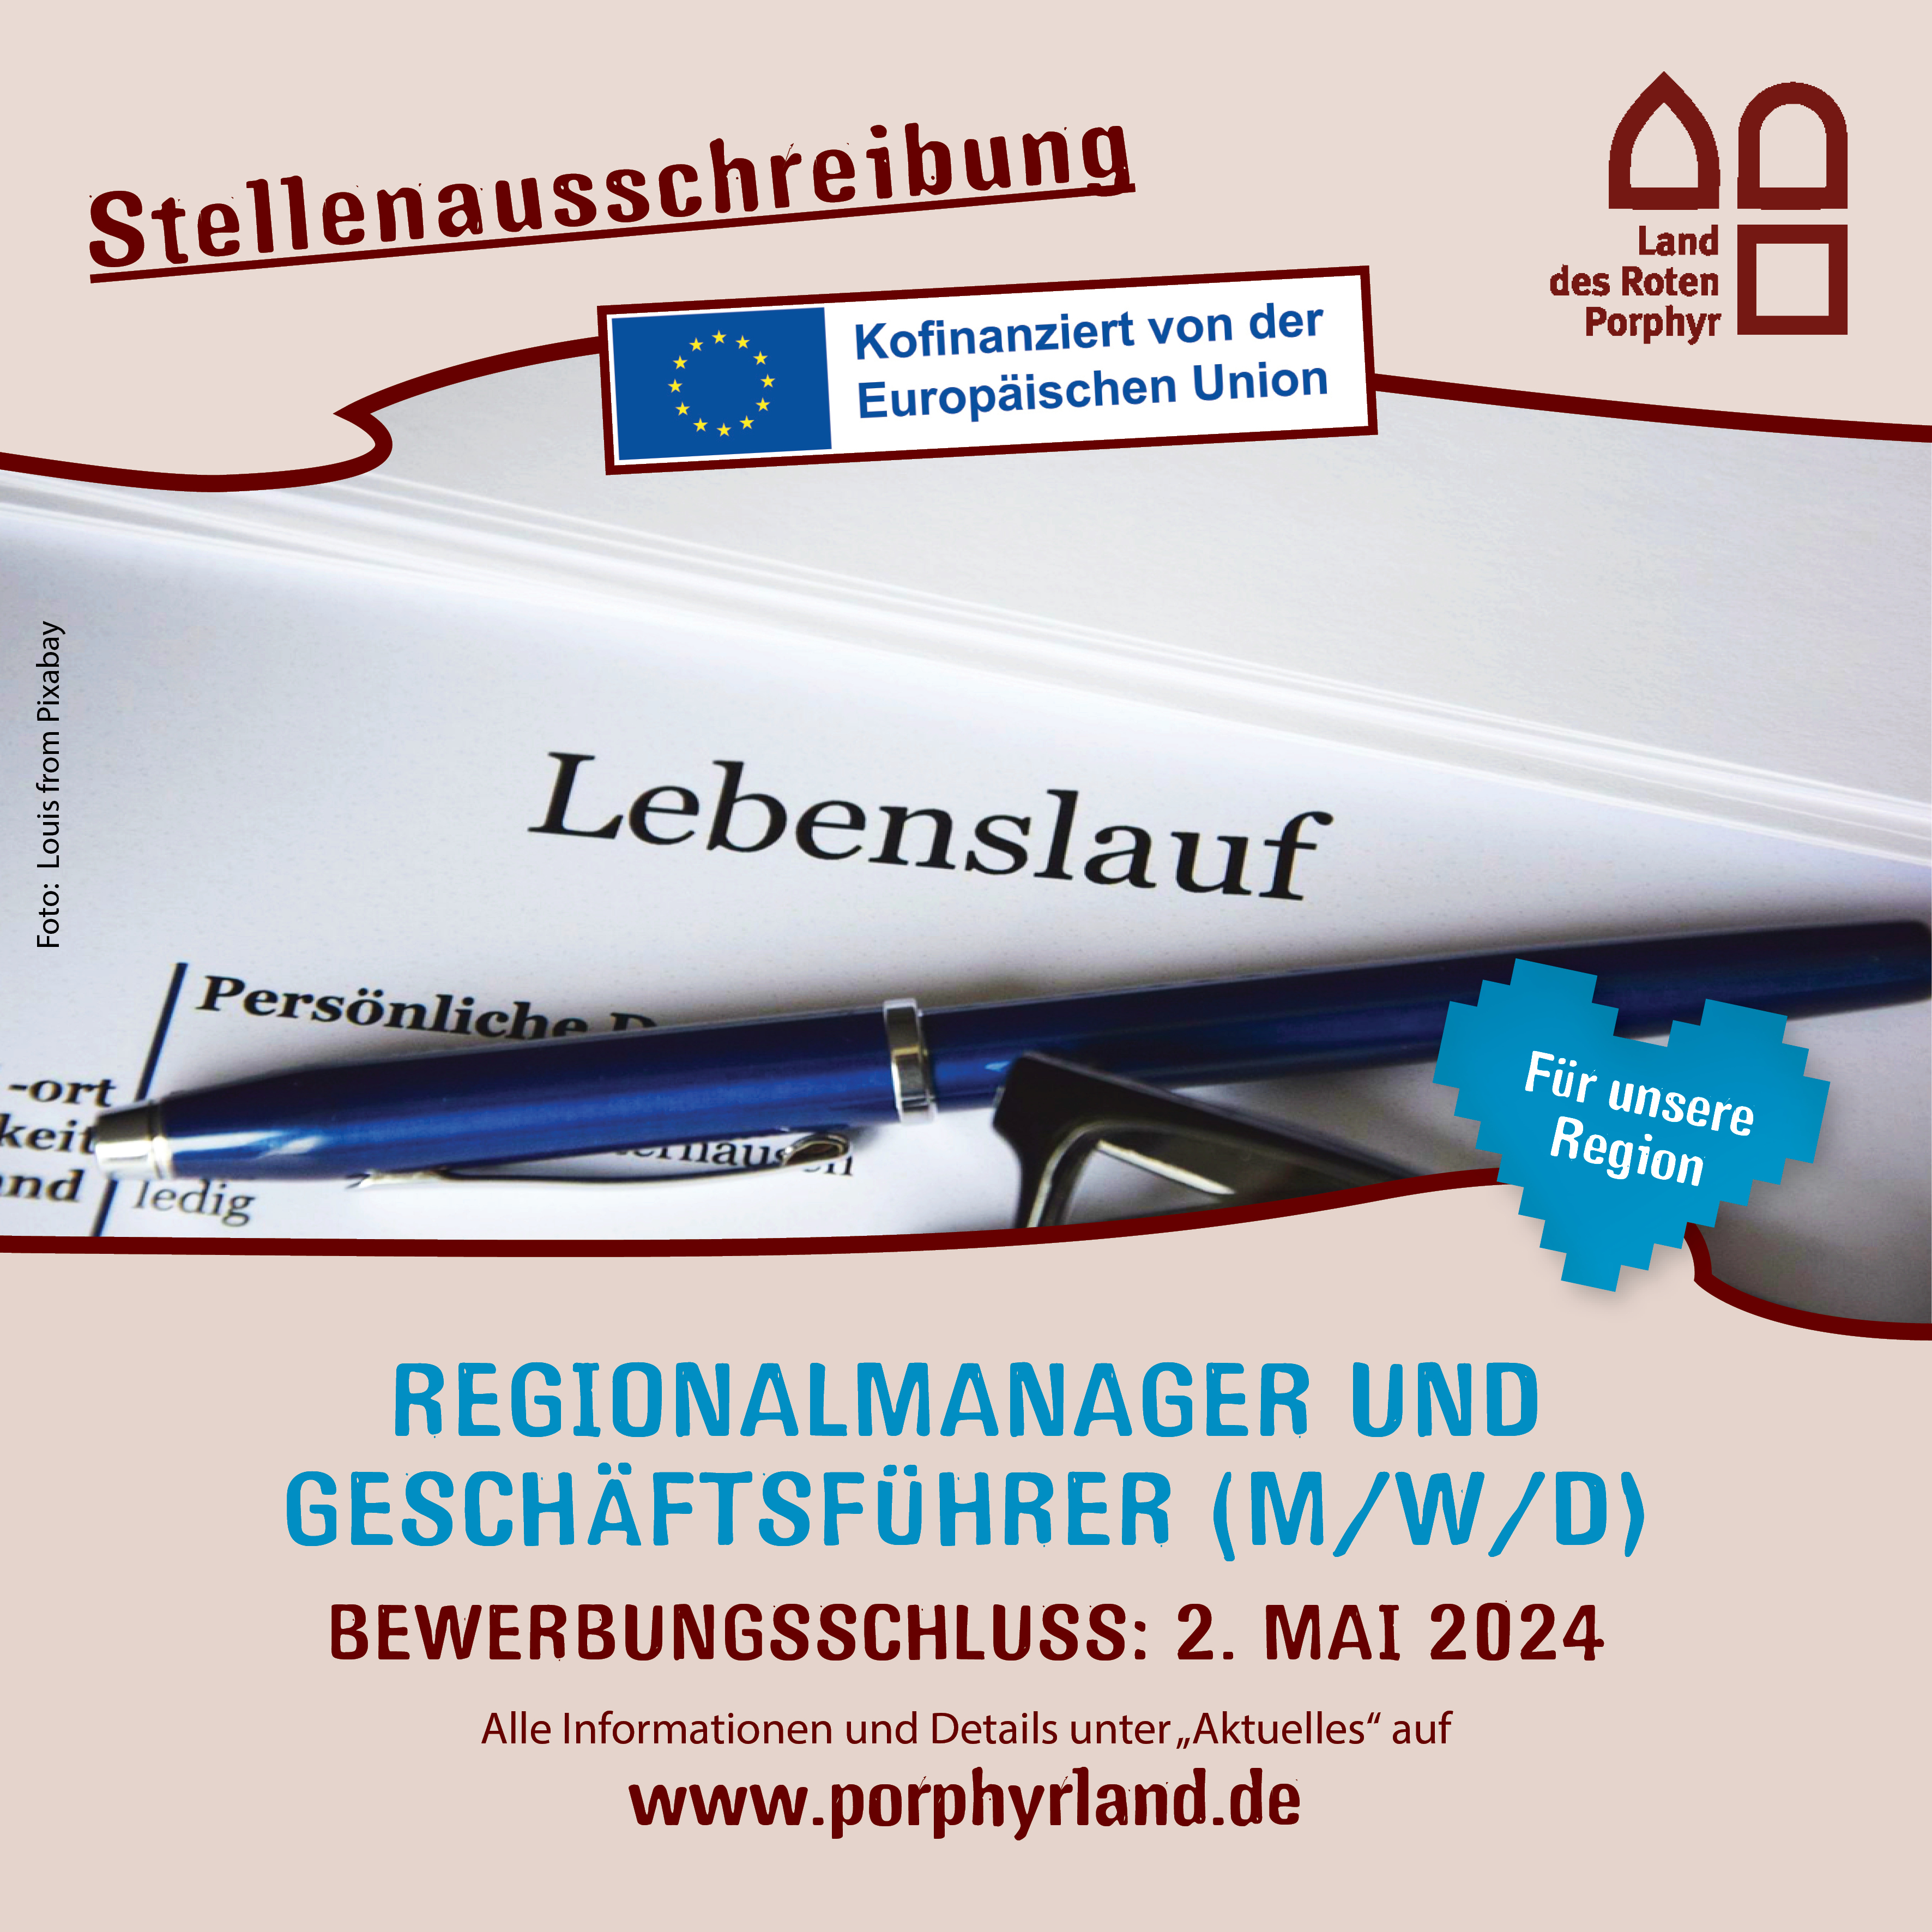 Bewerbungsschluss 2.Mai. Mehr Infos auf www.porphyrland.de